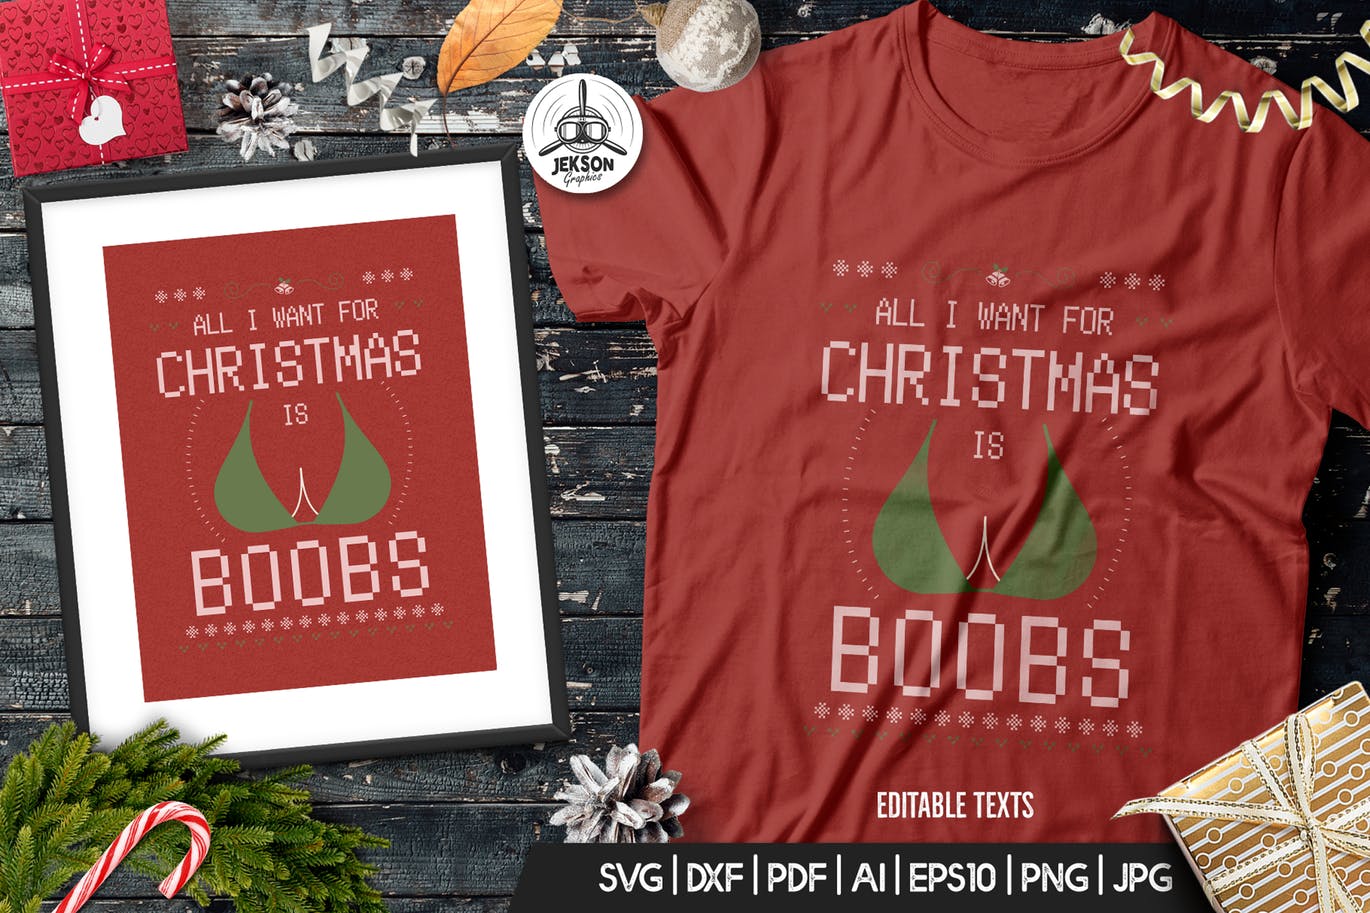 复古设计风格圣诞节T恤性感印花图案矢量设计素材 Funny Christmas Tshirt Template, Vintage Design插图